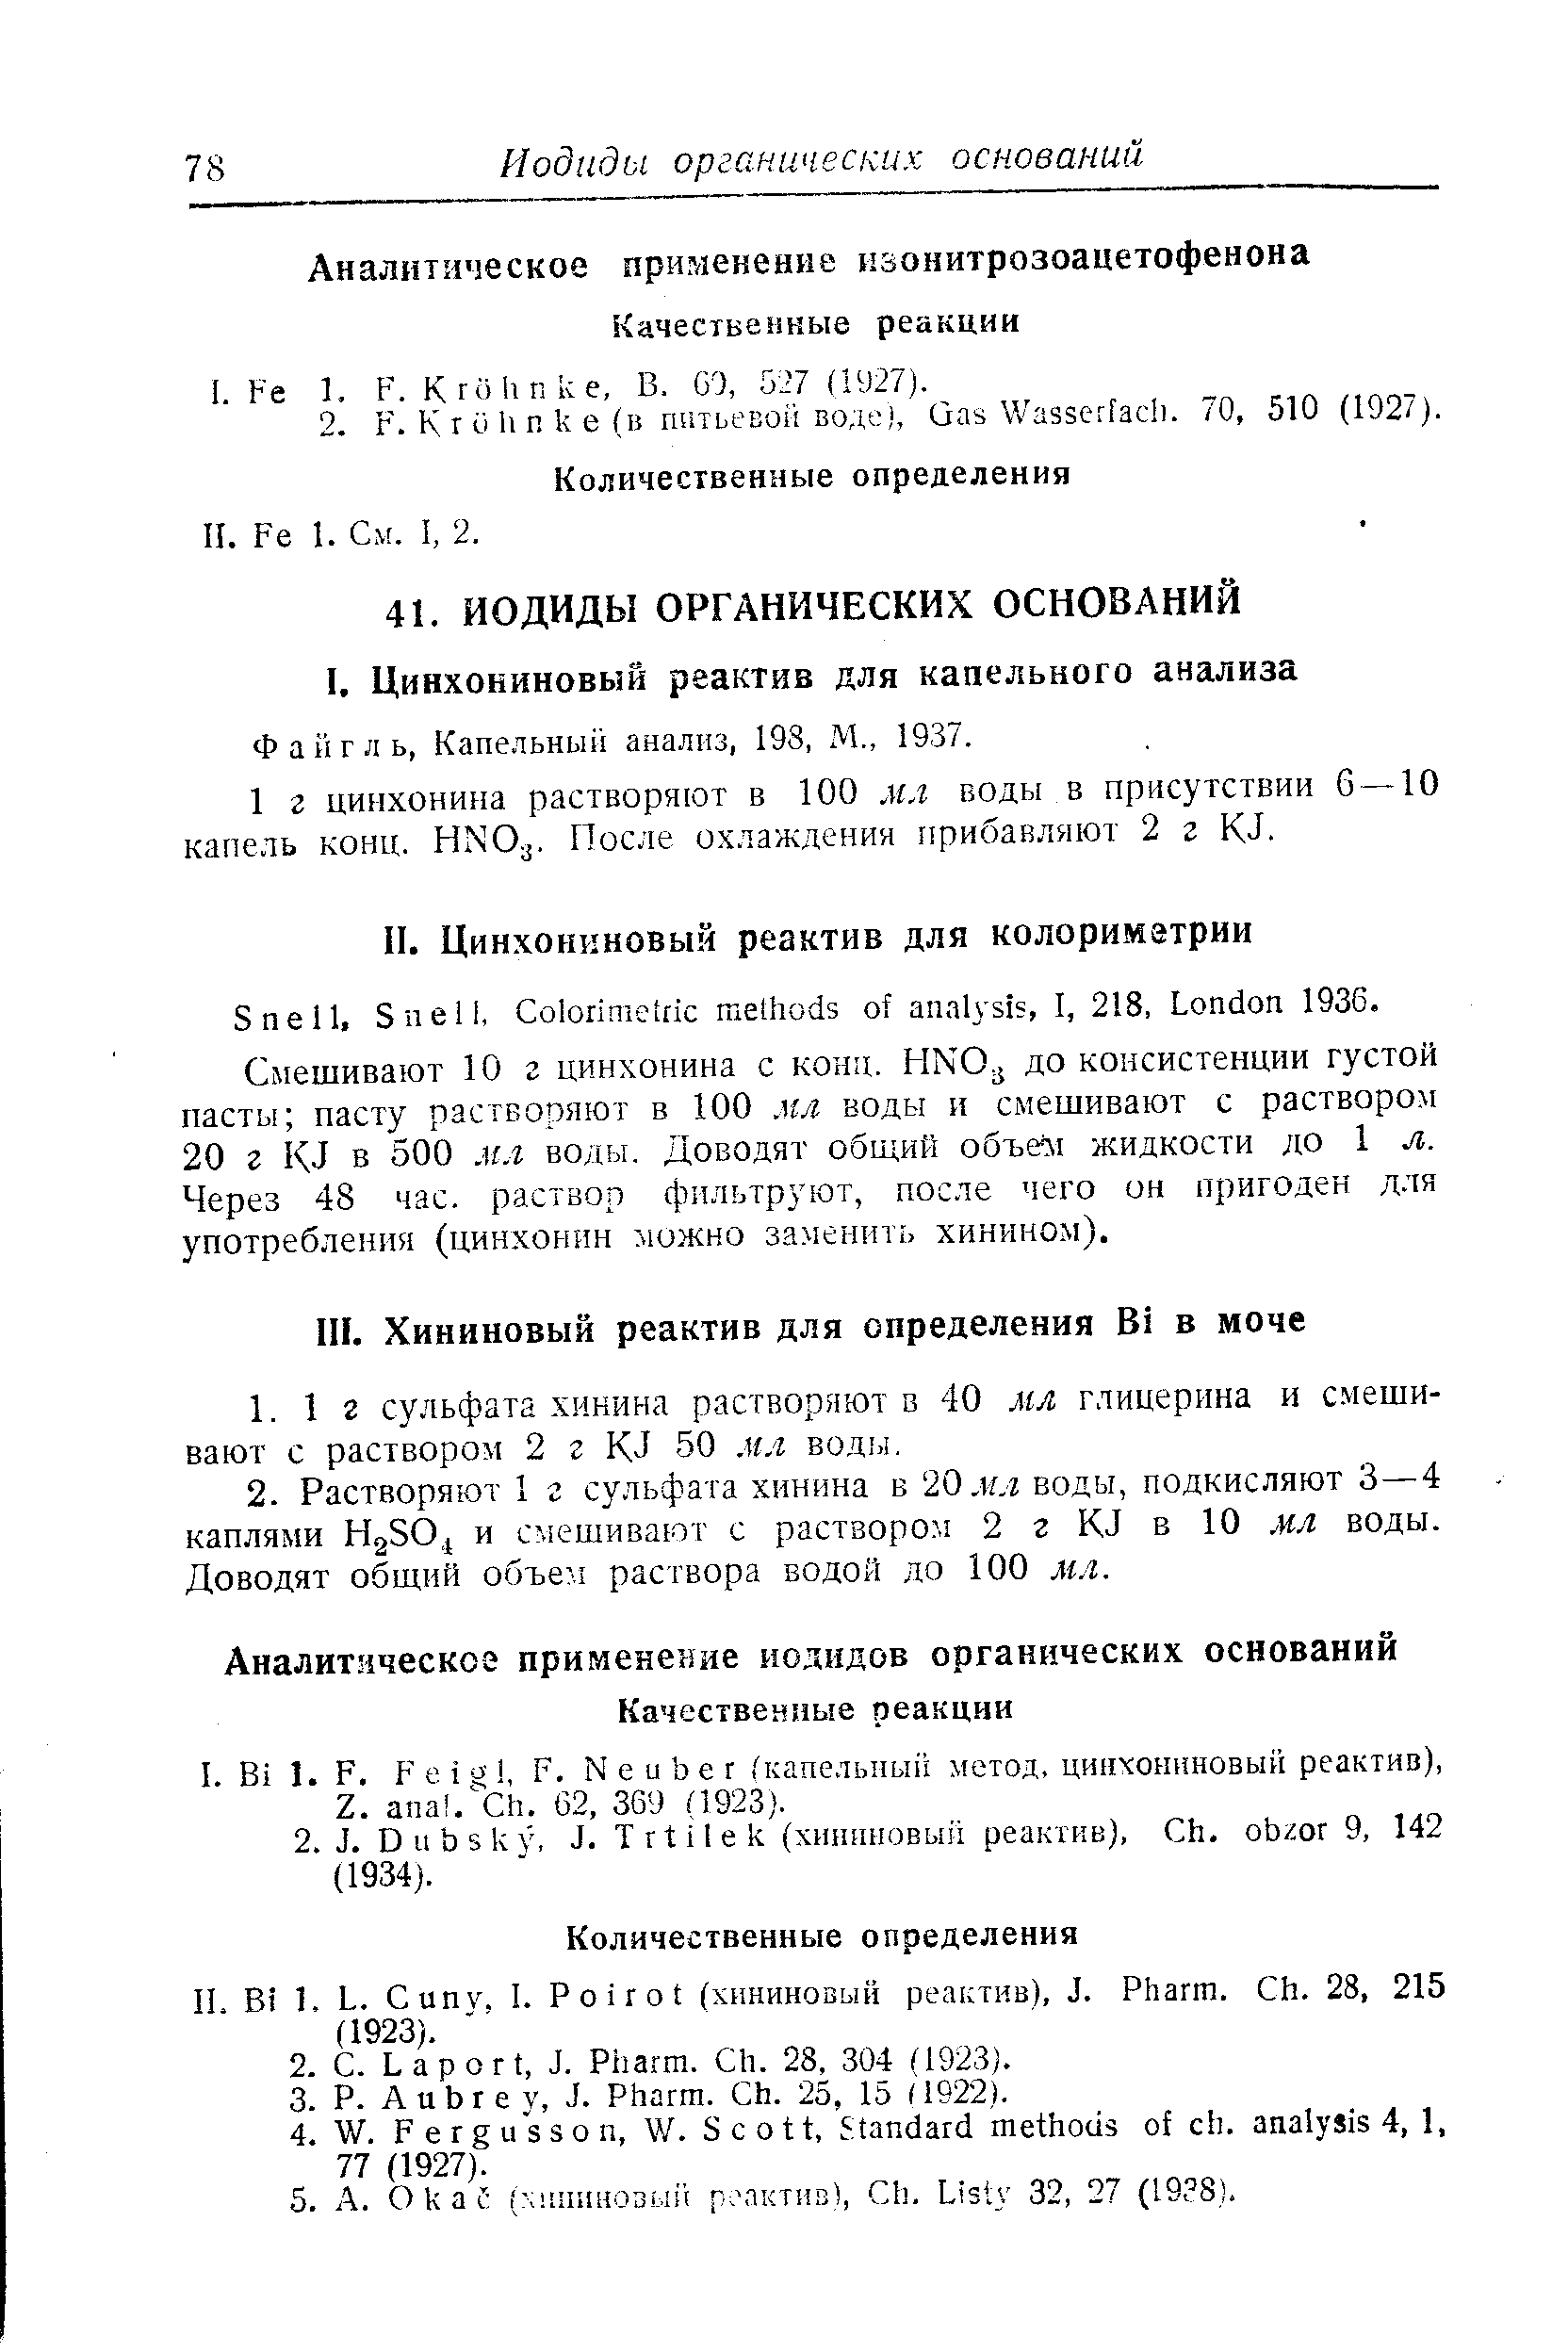 Файгль, Капельный анализ, 198, М., 1937.